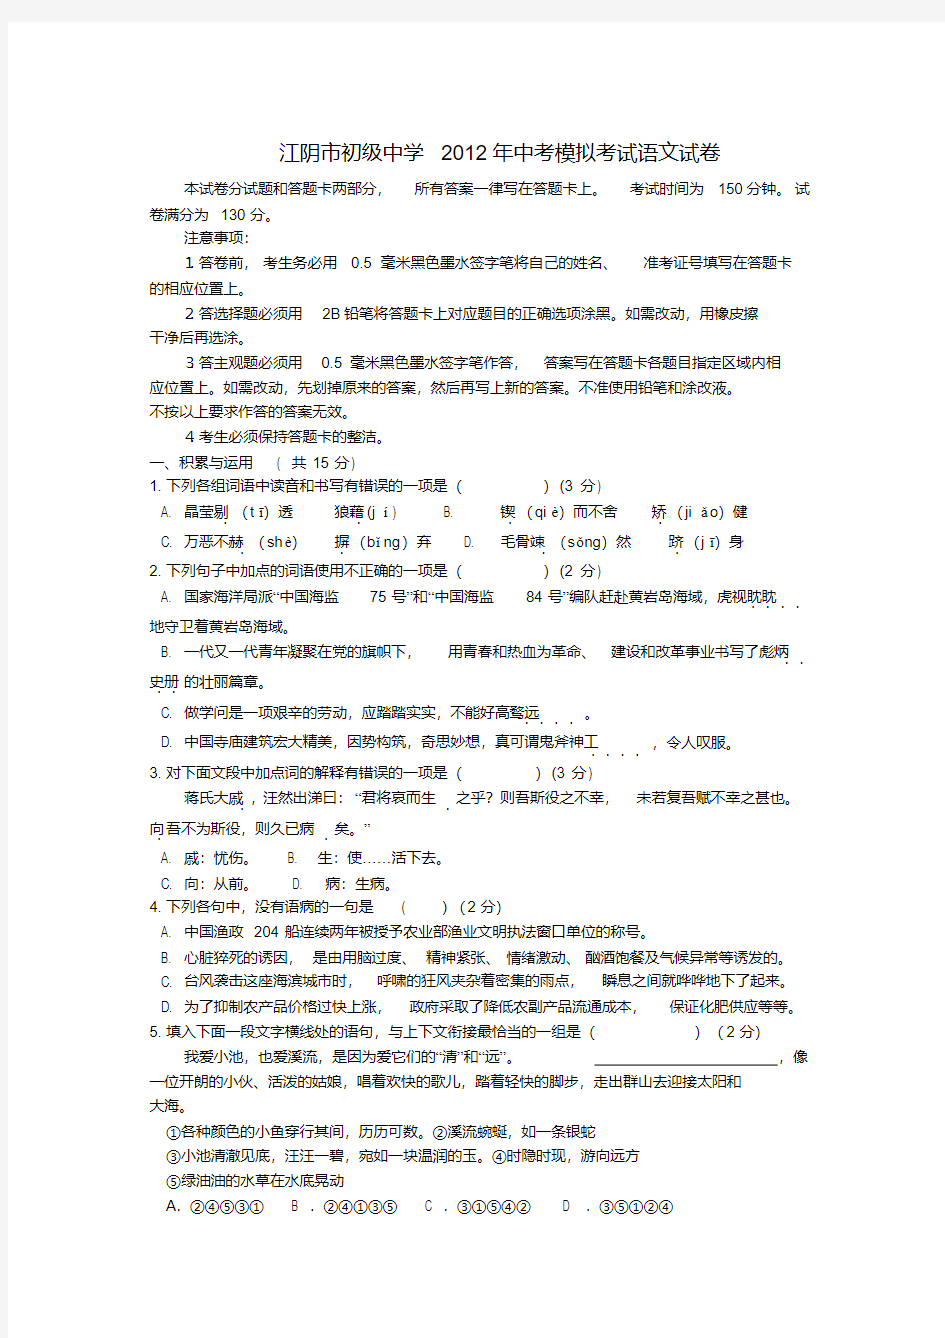 江苏省江阴市初级中学中考语文模拟考试试卷苏教版